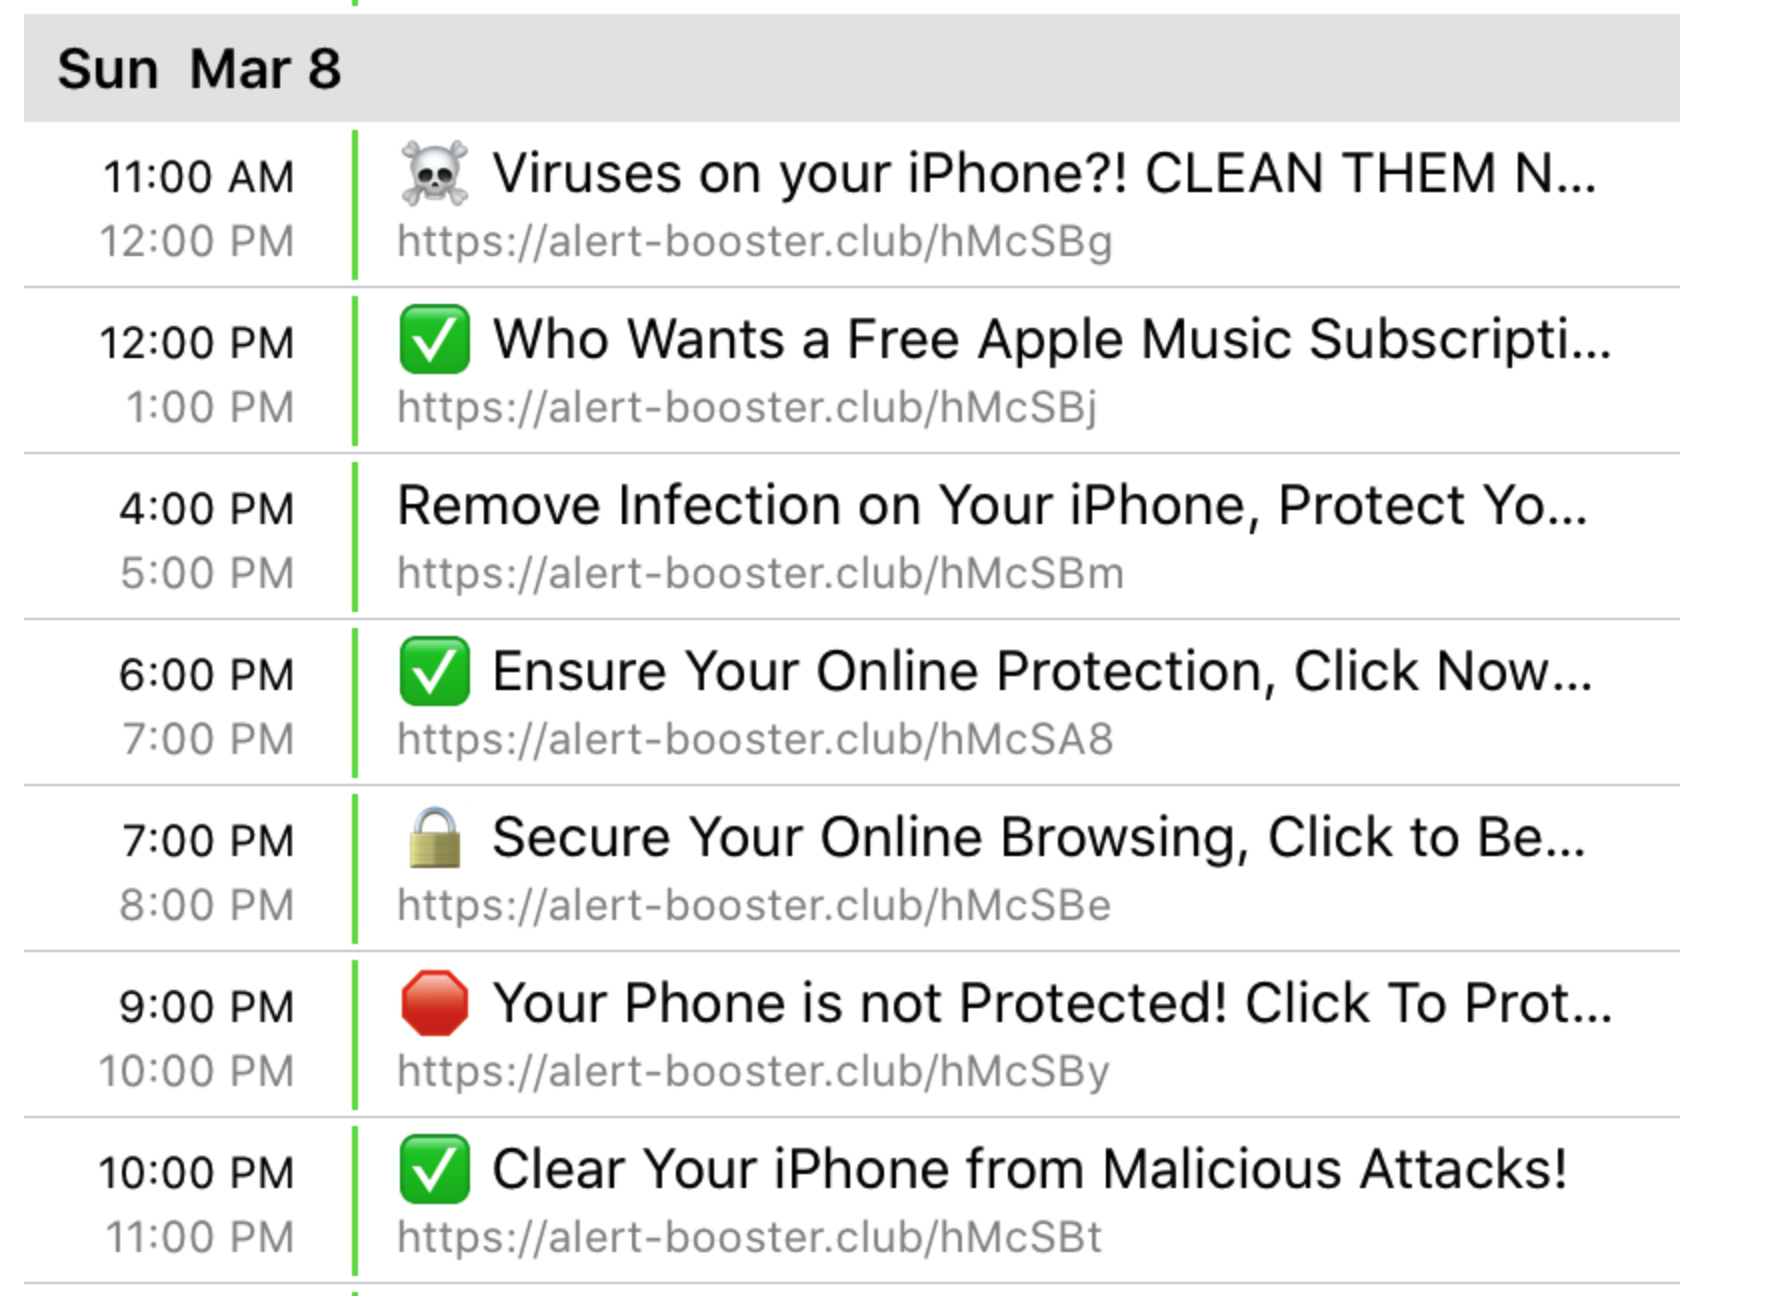 Iphone virus. Iphone вирус. Вирус в календаре. Вирус в календаре iphone. Ваш браузер на 59% вирусов айфон.